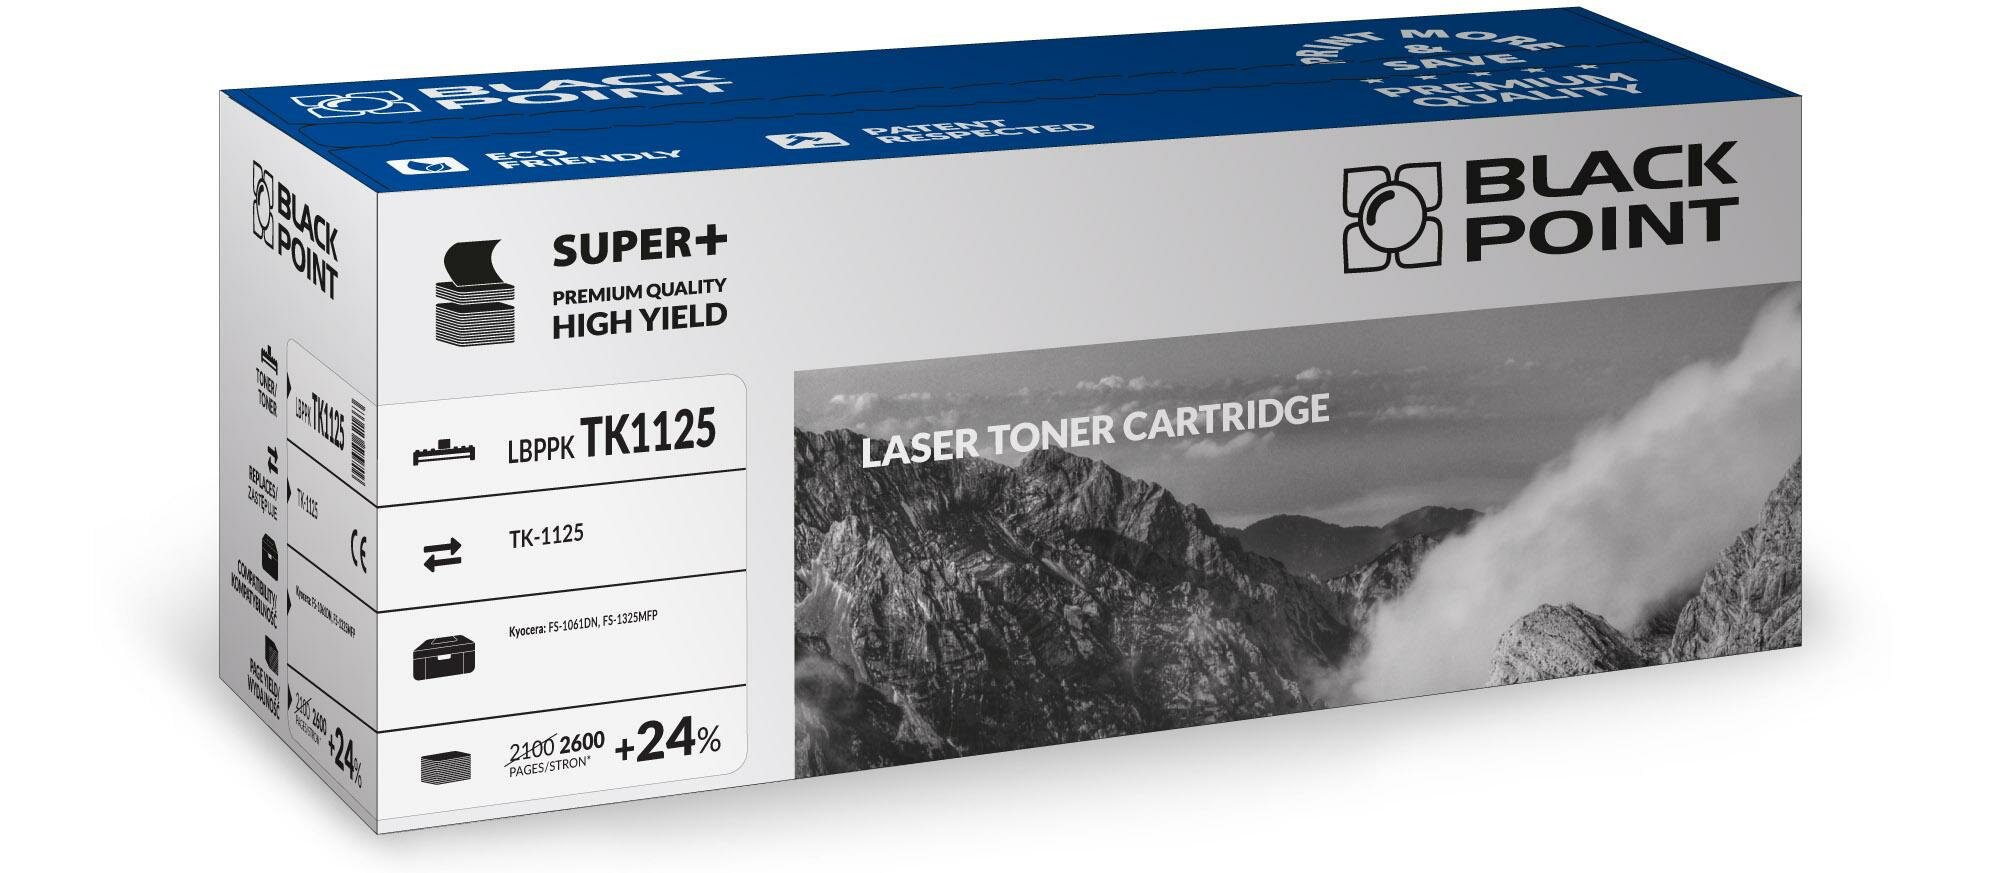 Toner laserowy Black Point Super Plus LBPPKTK1125 widok pod kątem na opakowanie